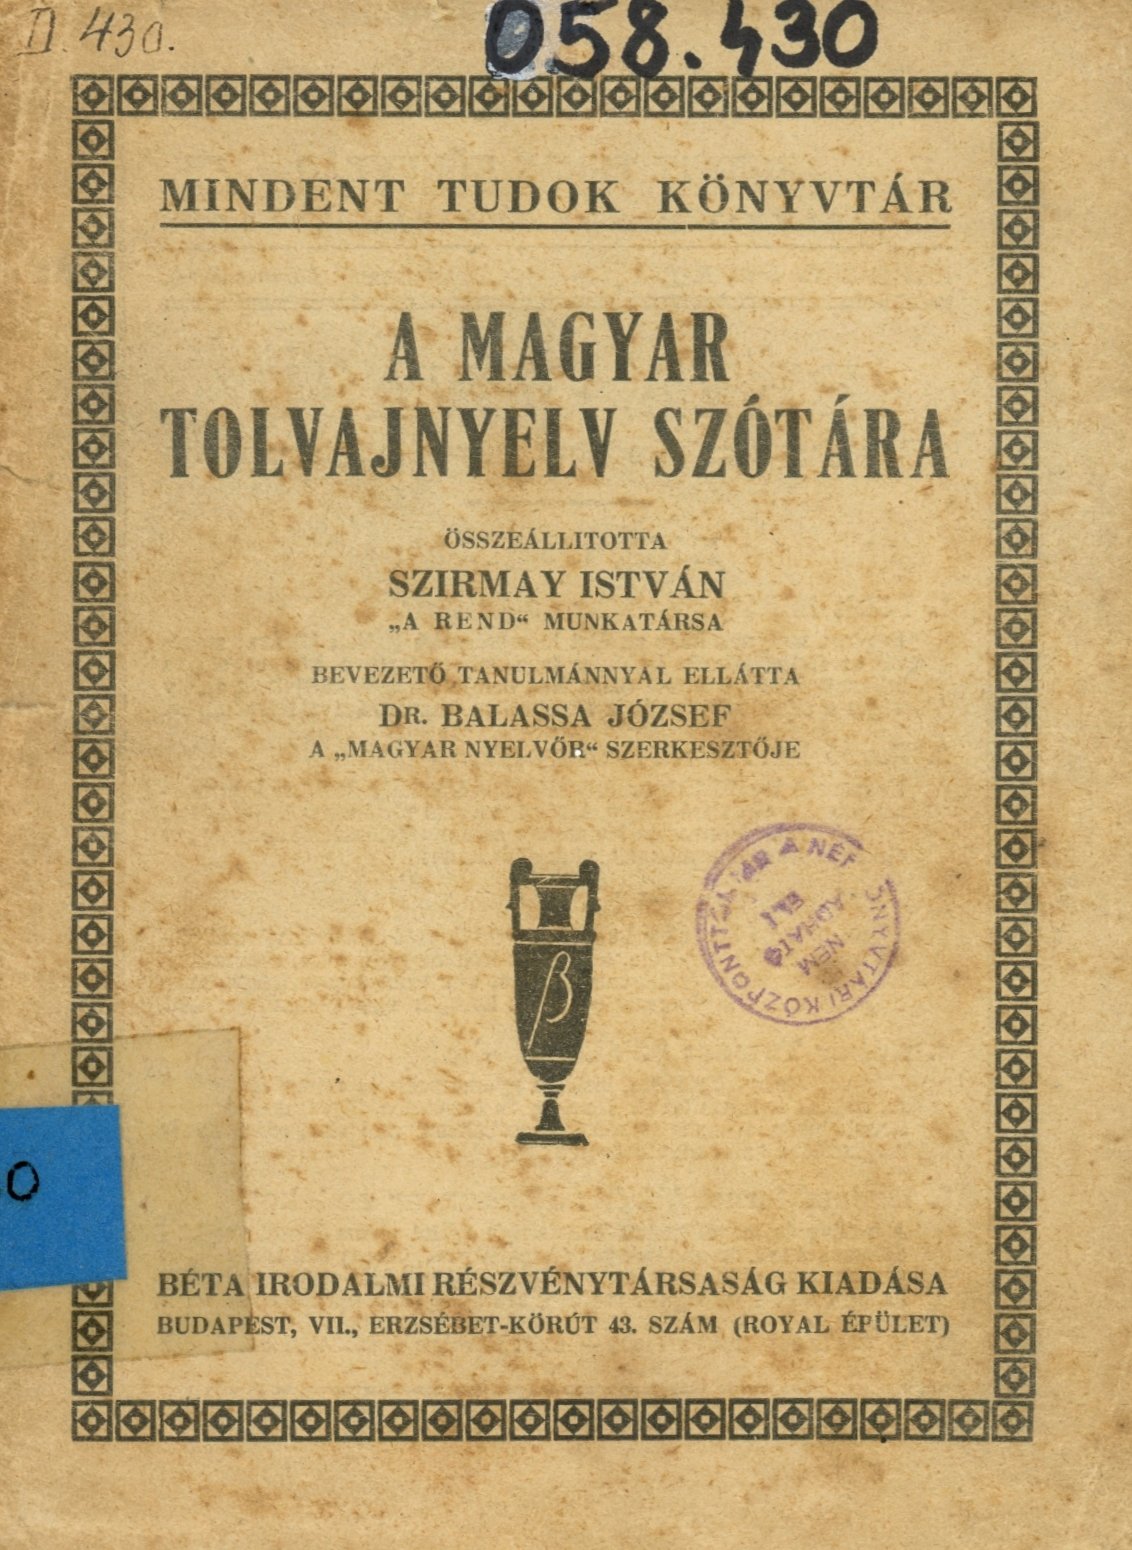 A Magyar Tolvajnyelv Szótára (Erkel Ferenc Múzeum és Könyvtár, Gyula CC BY-NC-SA)